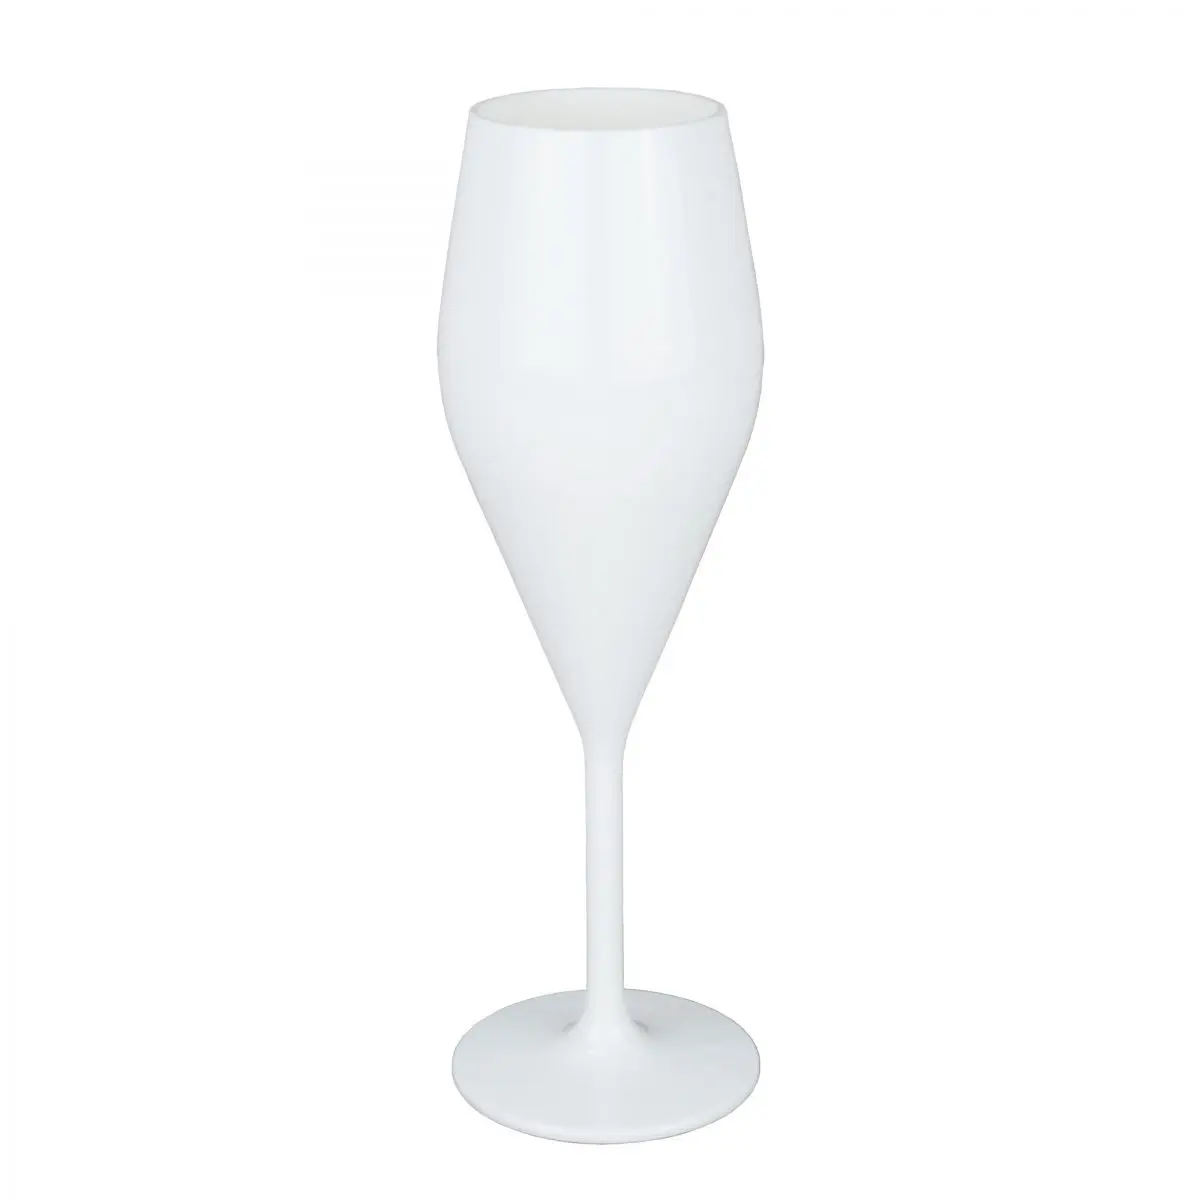 Pezsgős pohár 2 db. - Pezsgős pohár elegancea, fehér, 2 részes készlet